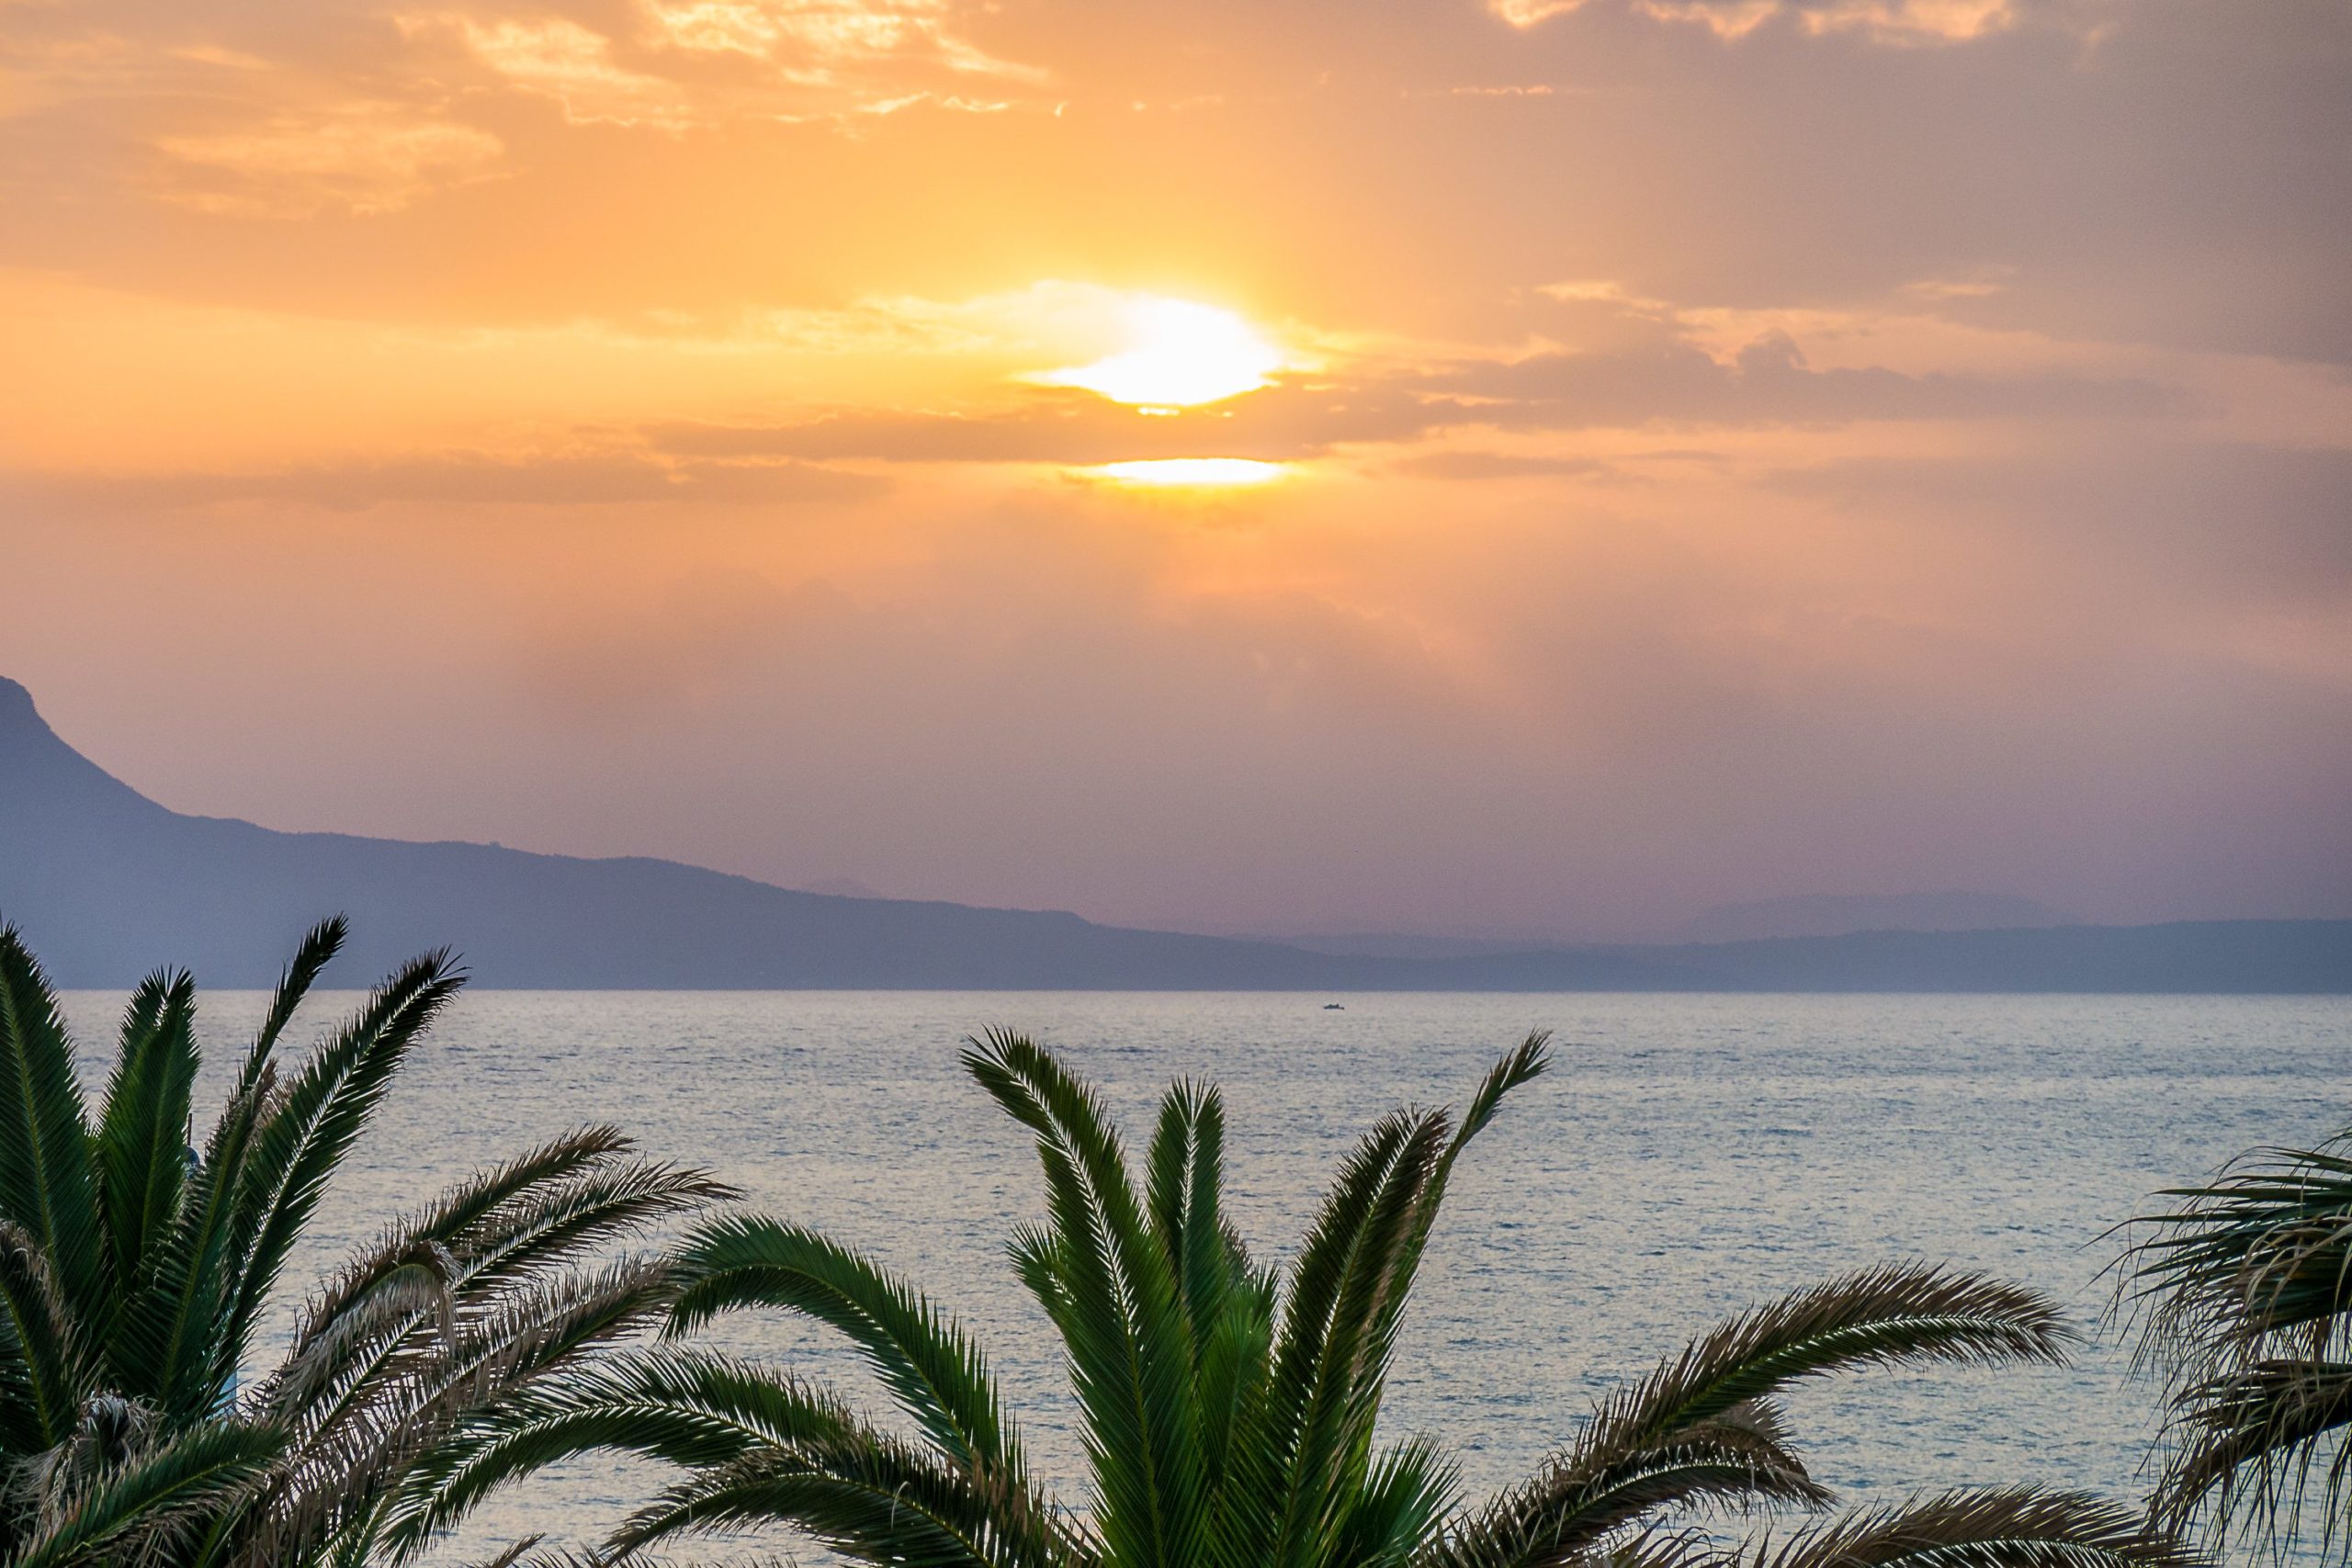 Reisebericht Kreta - Teil 1: Anreise und ein entspannter erster Tag